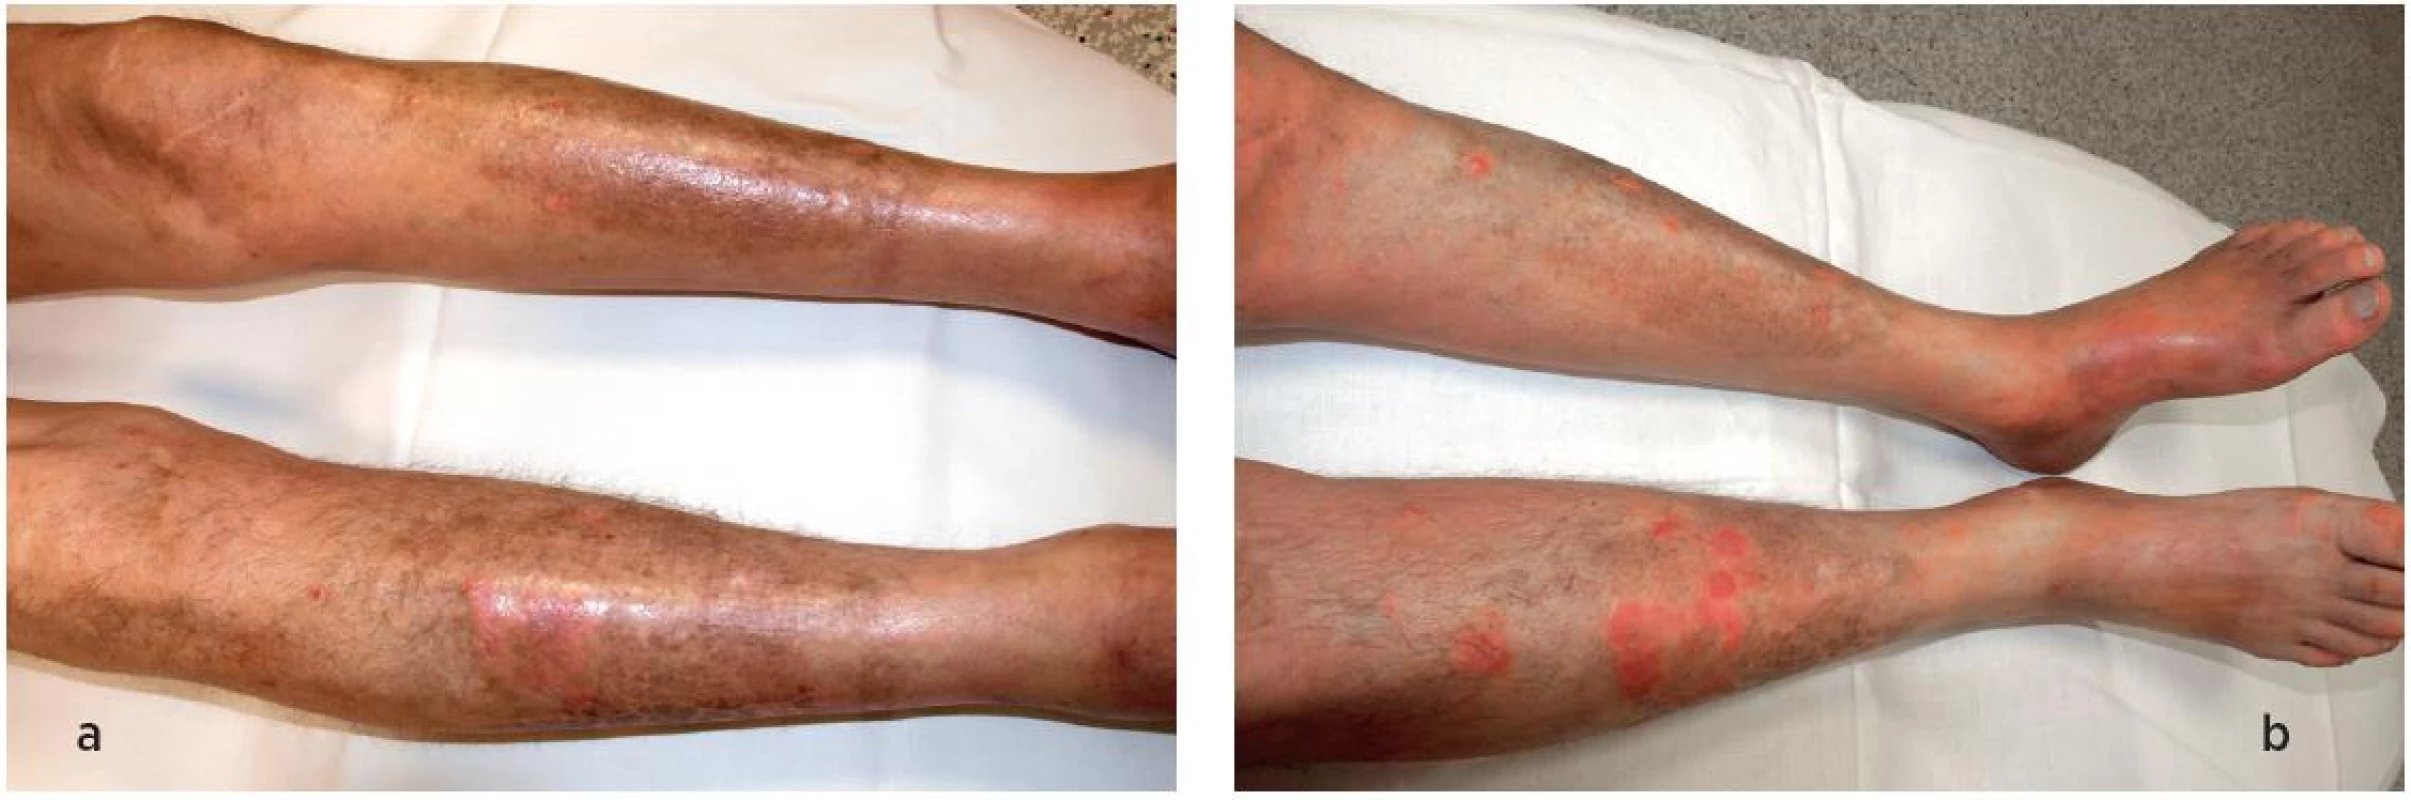 Kožní nález na dolních končetinách při stanovení diagnózy (a) a po terapii (b). Kožní nález je částečně modifikován současným výsevem psoriázy, kterou pacient trpí dlouhodobě.